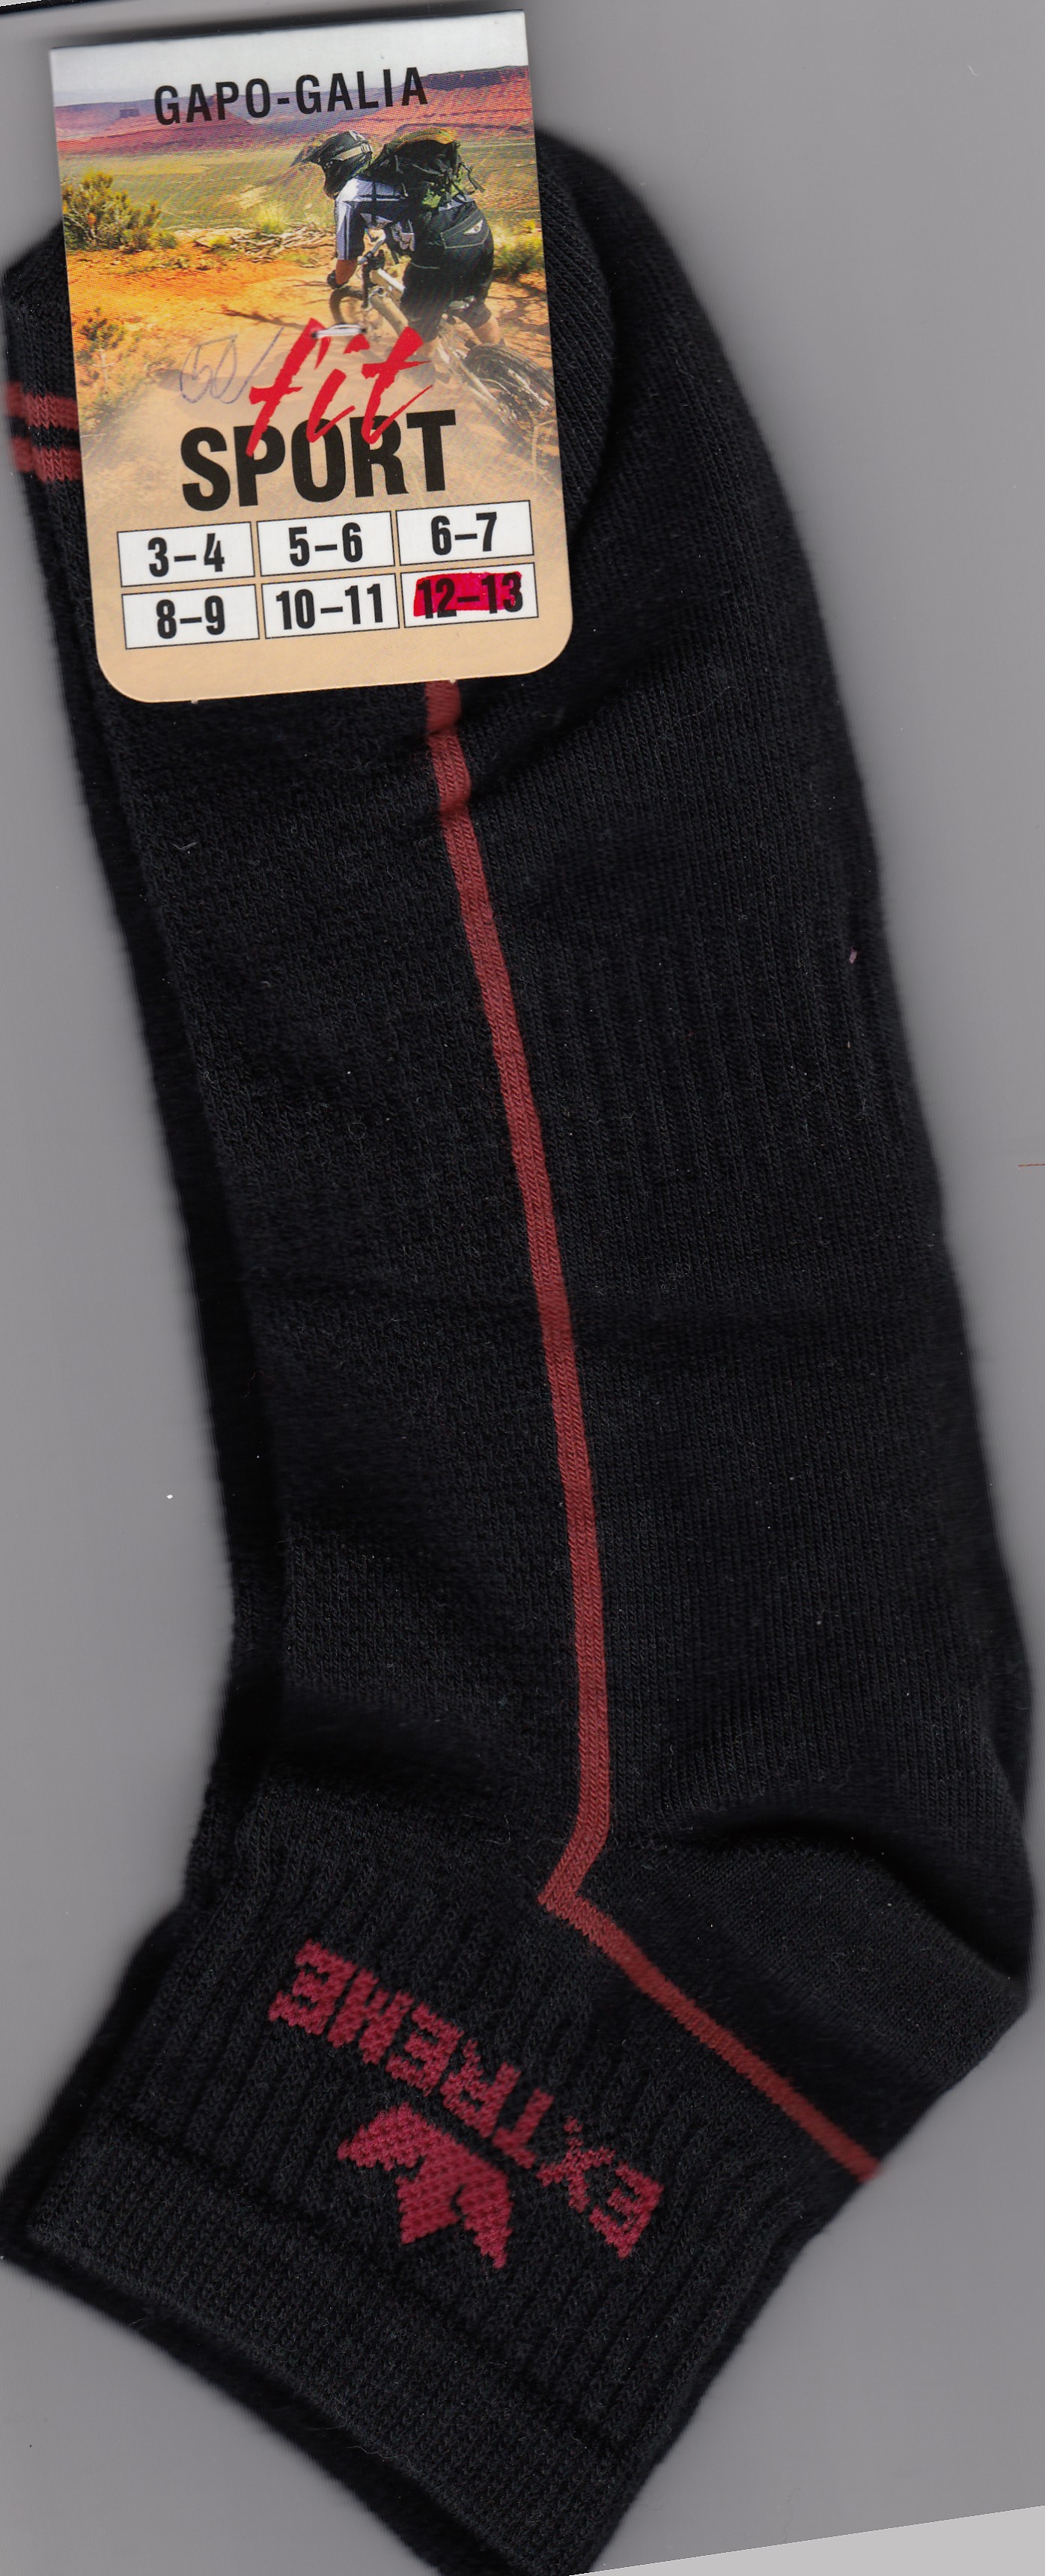 Pánské krátké ponožky velikost 12-13(47-48)